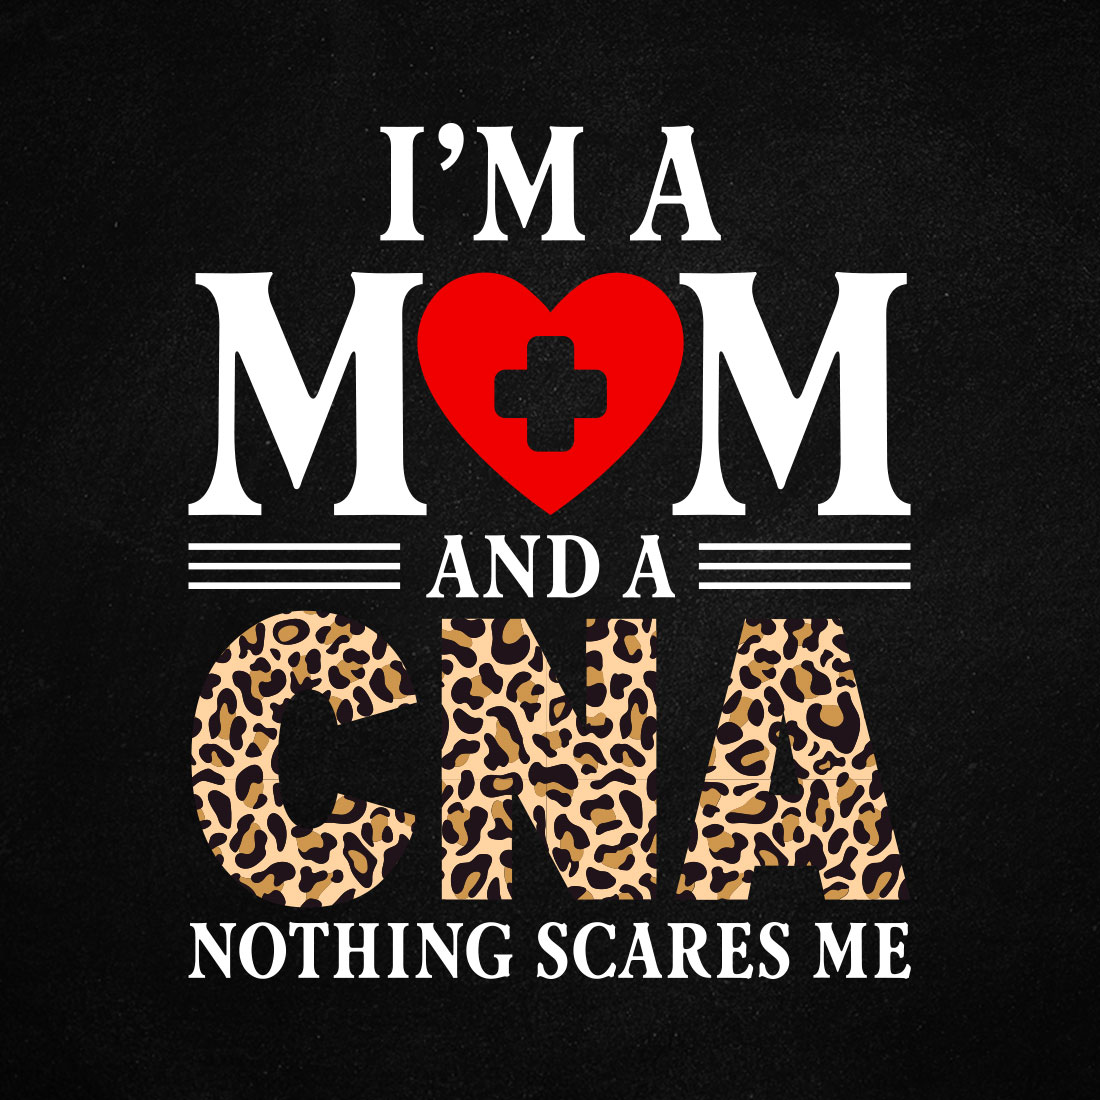 Funny Nurse CNA Mom Certified Nursing T shirt Design cover image.